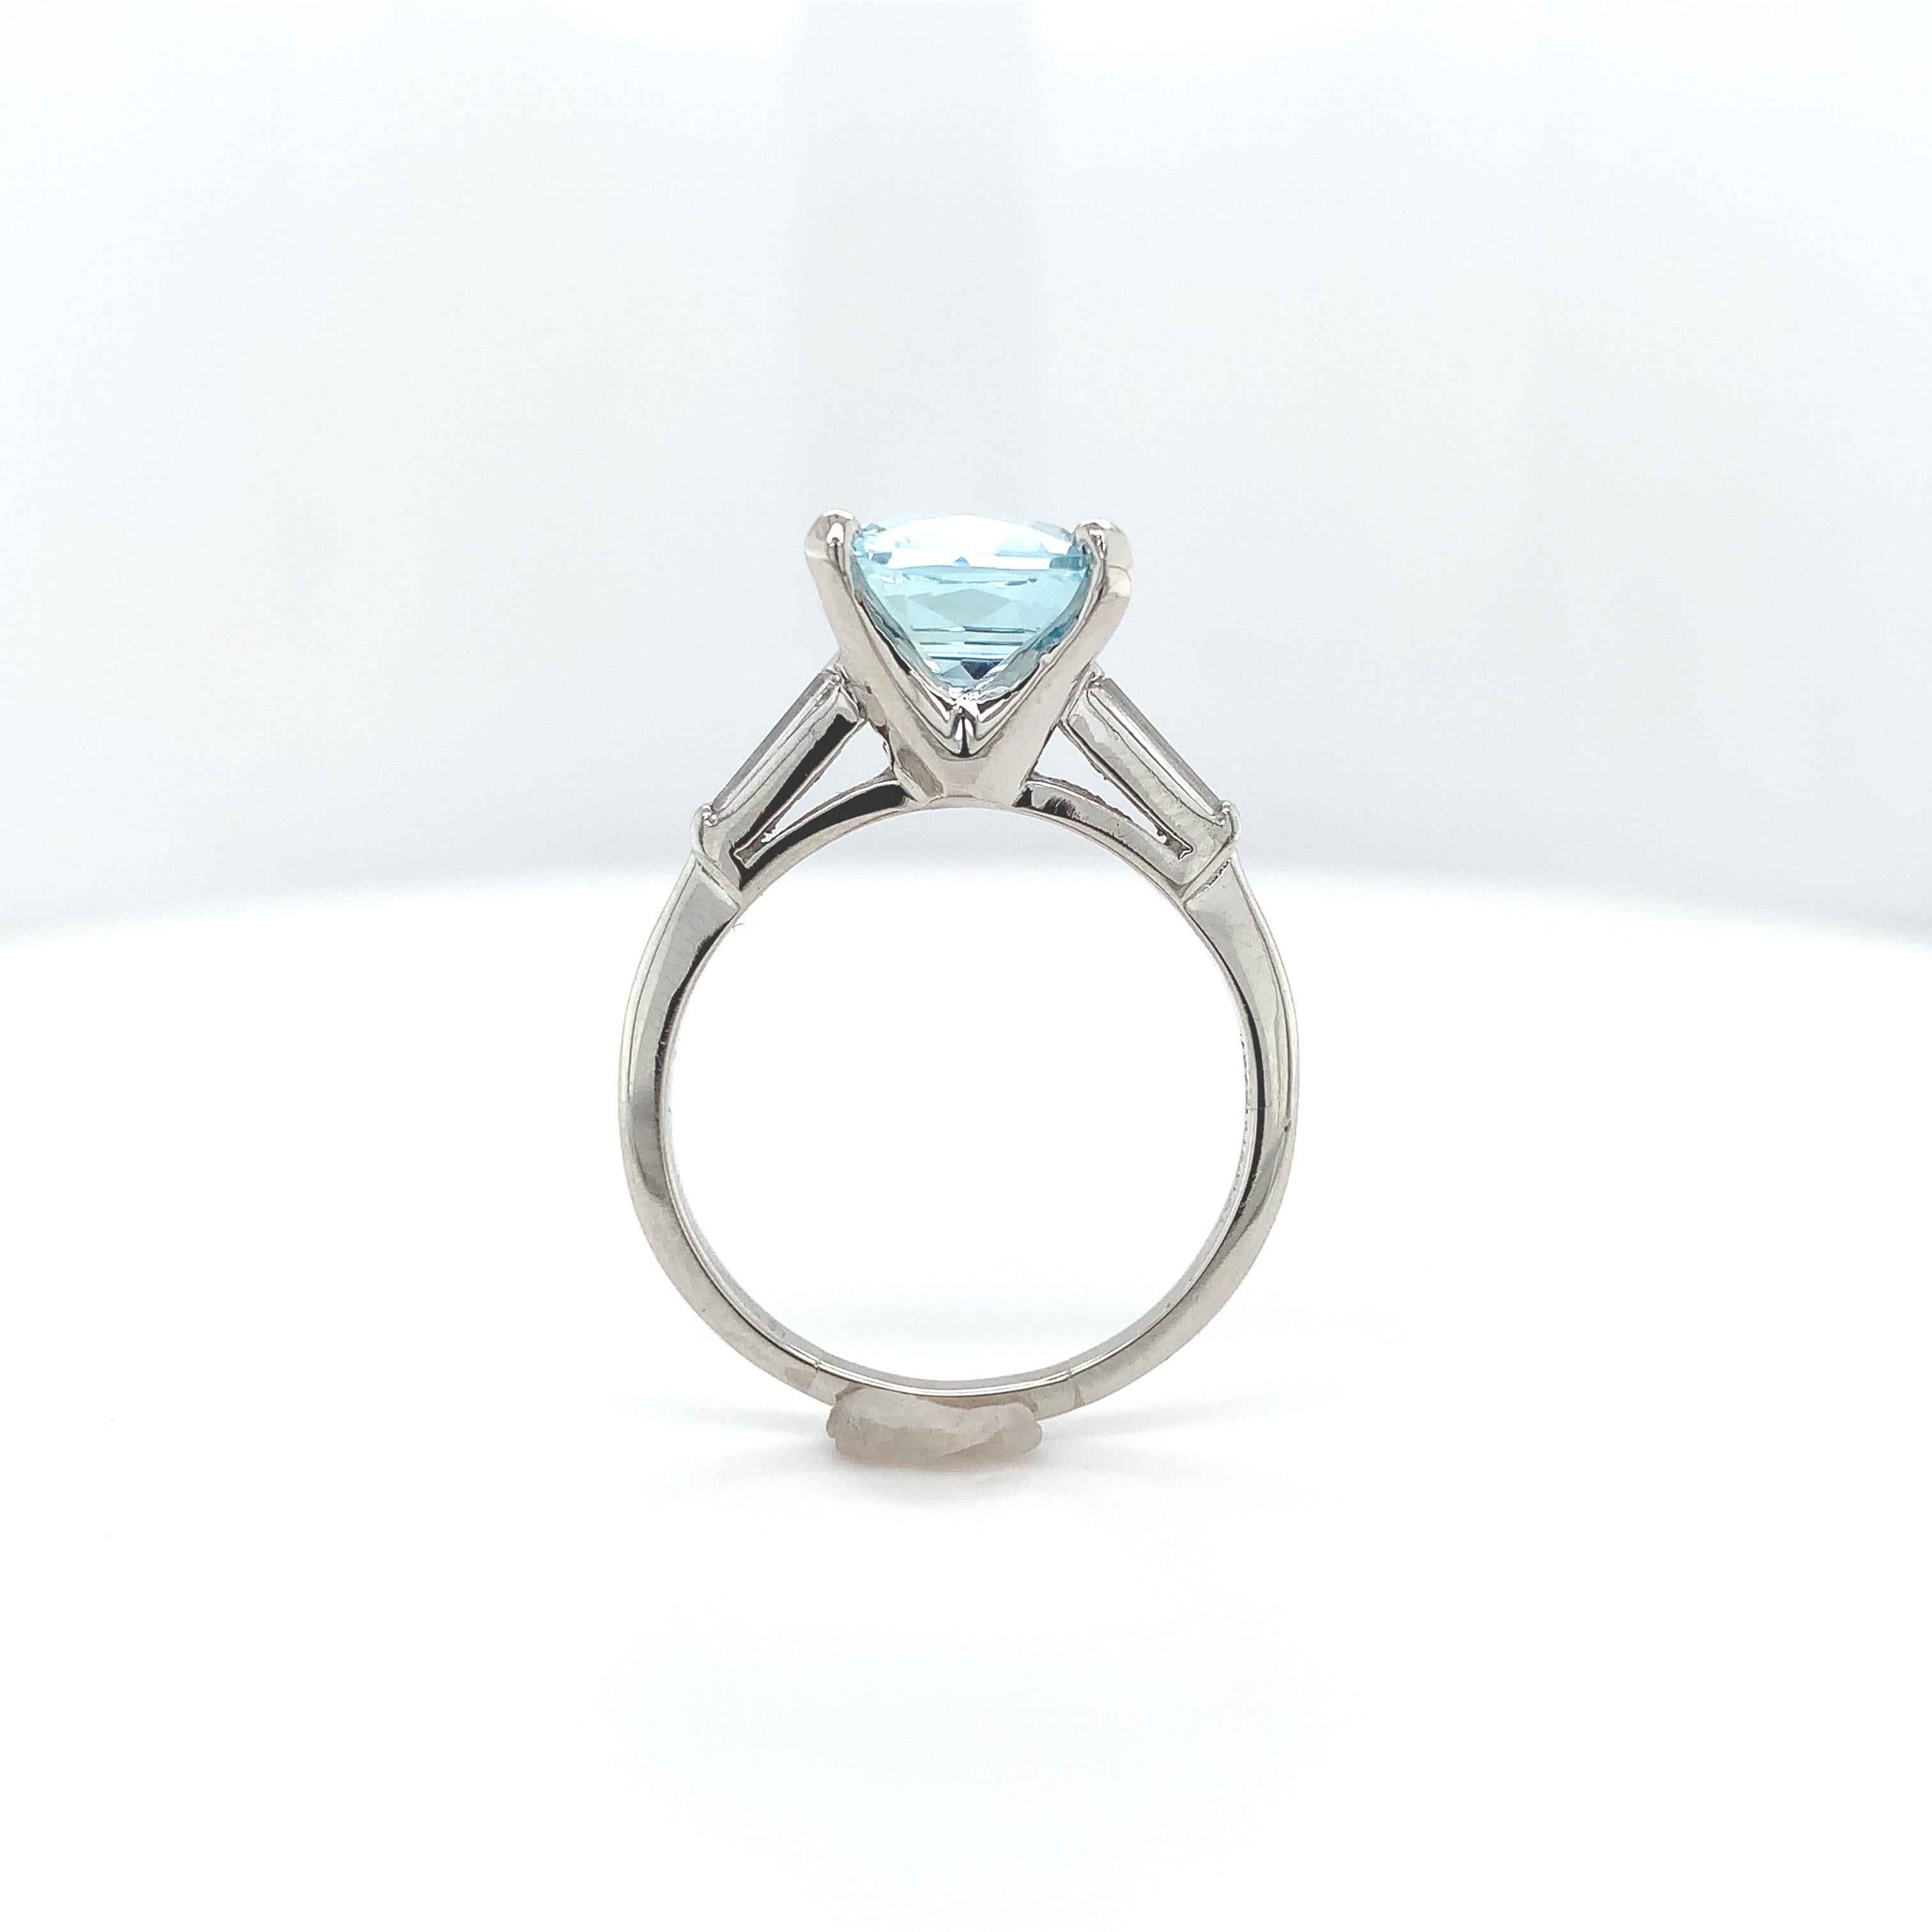 Platinring mit 2.51 Karat Aquamarin und Diamant. Der hellblaue Aquamarin ist eine schöne Spezialität im antiken Kissenschliff und misst etwa 9 mm. Es gibt 2 lange Diamant-Baguette-Akzente, die etwa 5 mm x 1,5 mm messen. Der Ring passt auf einen